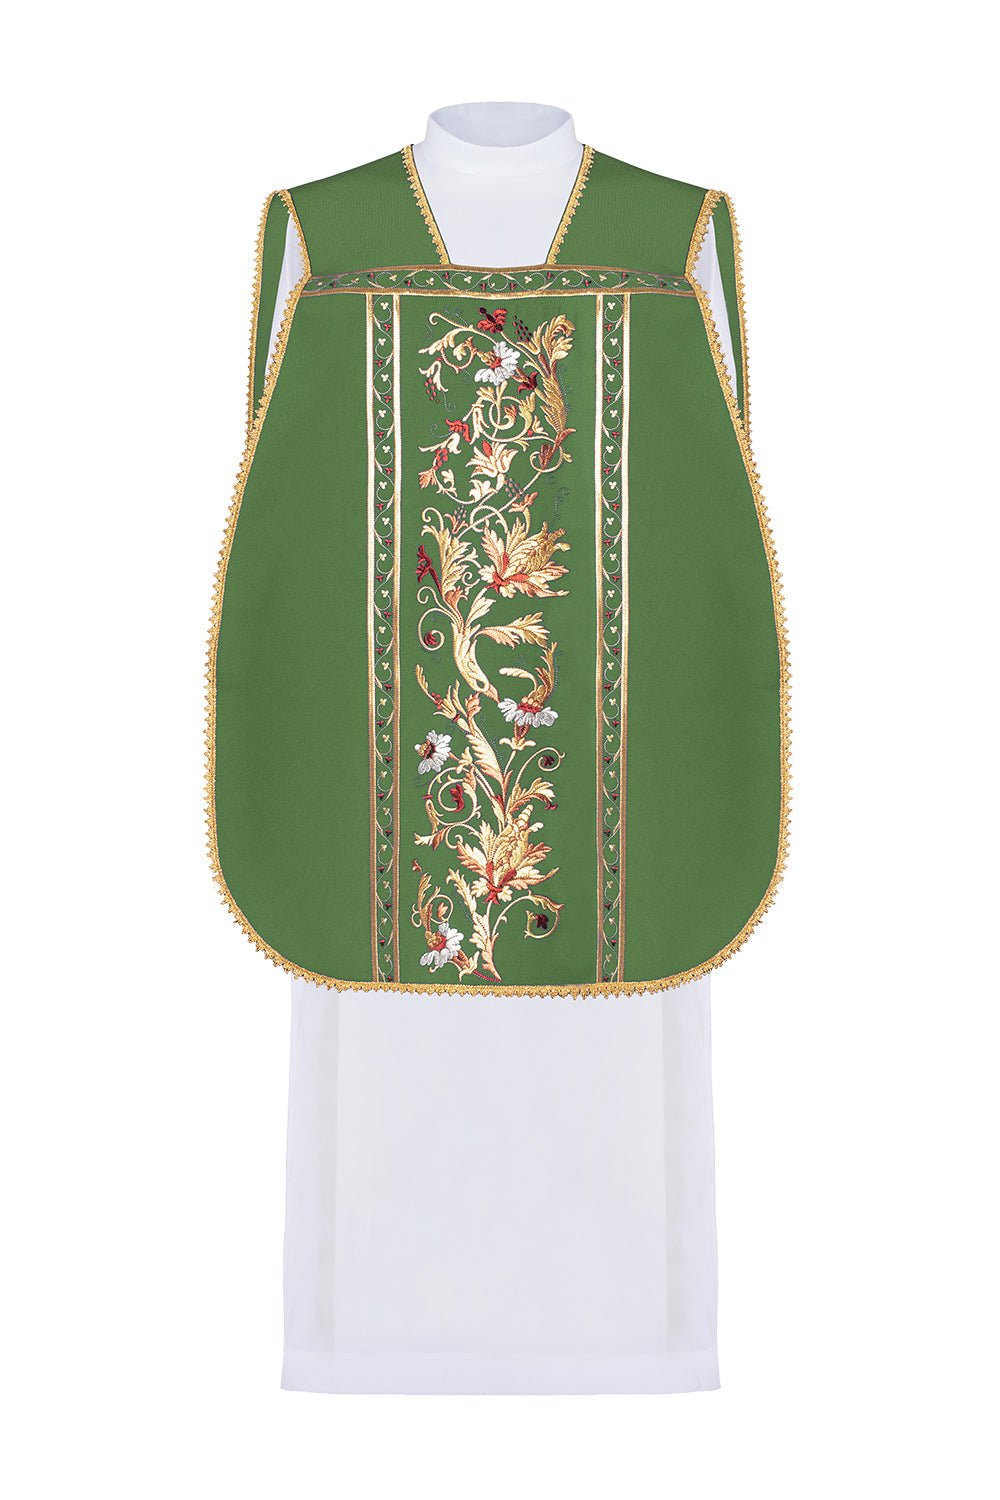 Zielony ornat rzymski haftowany z motywem kielicha eucharystycznego